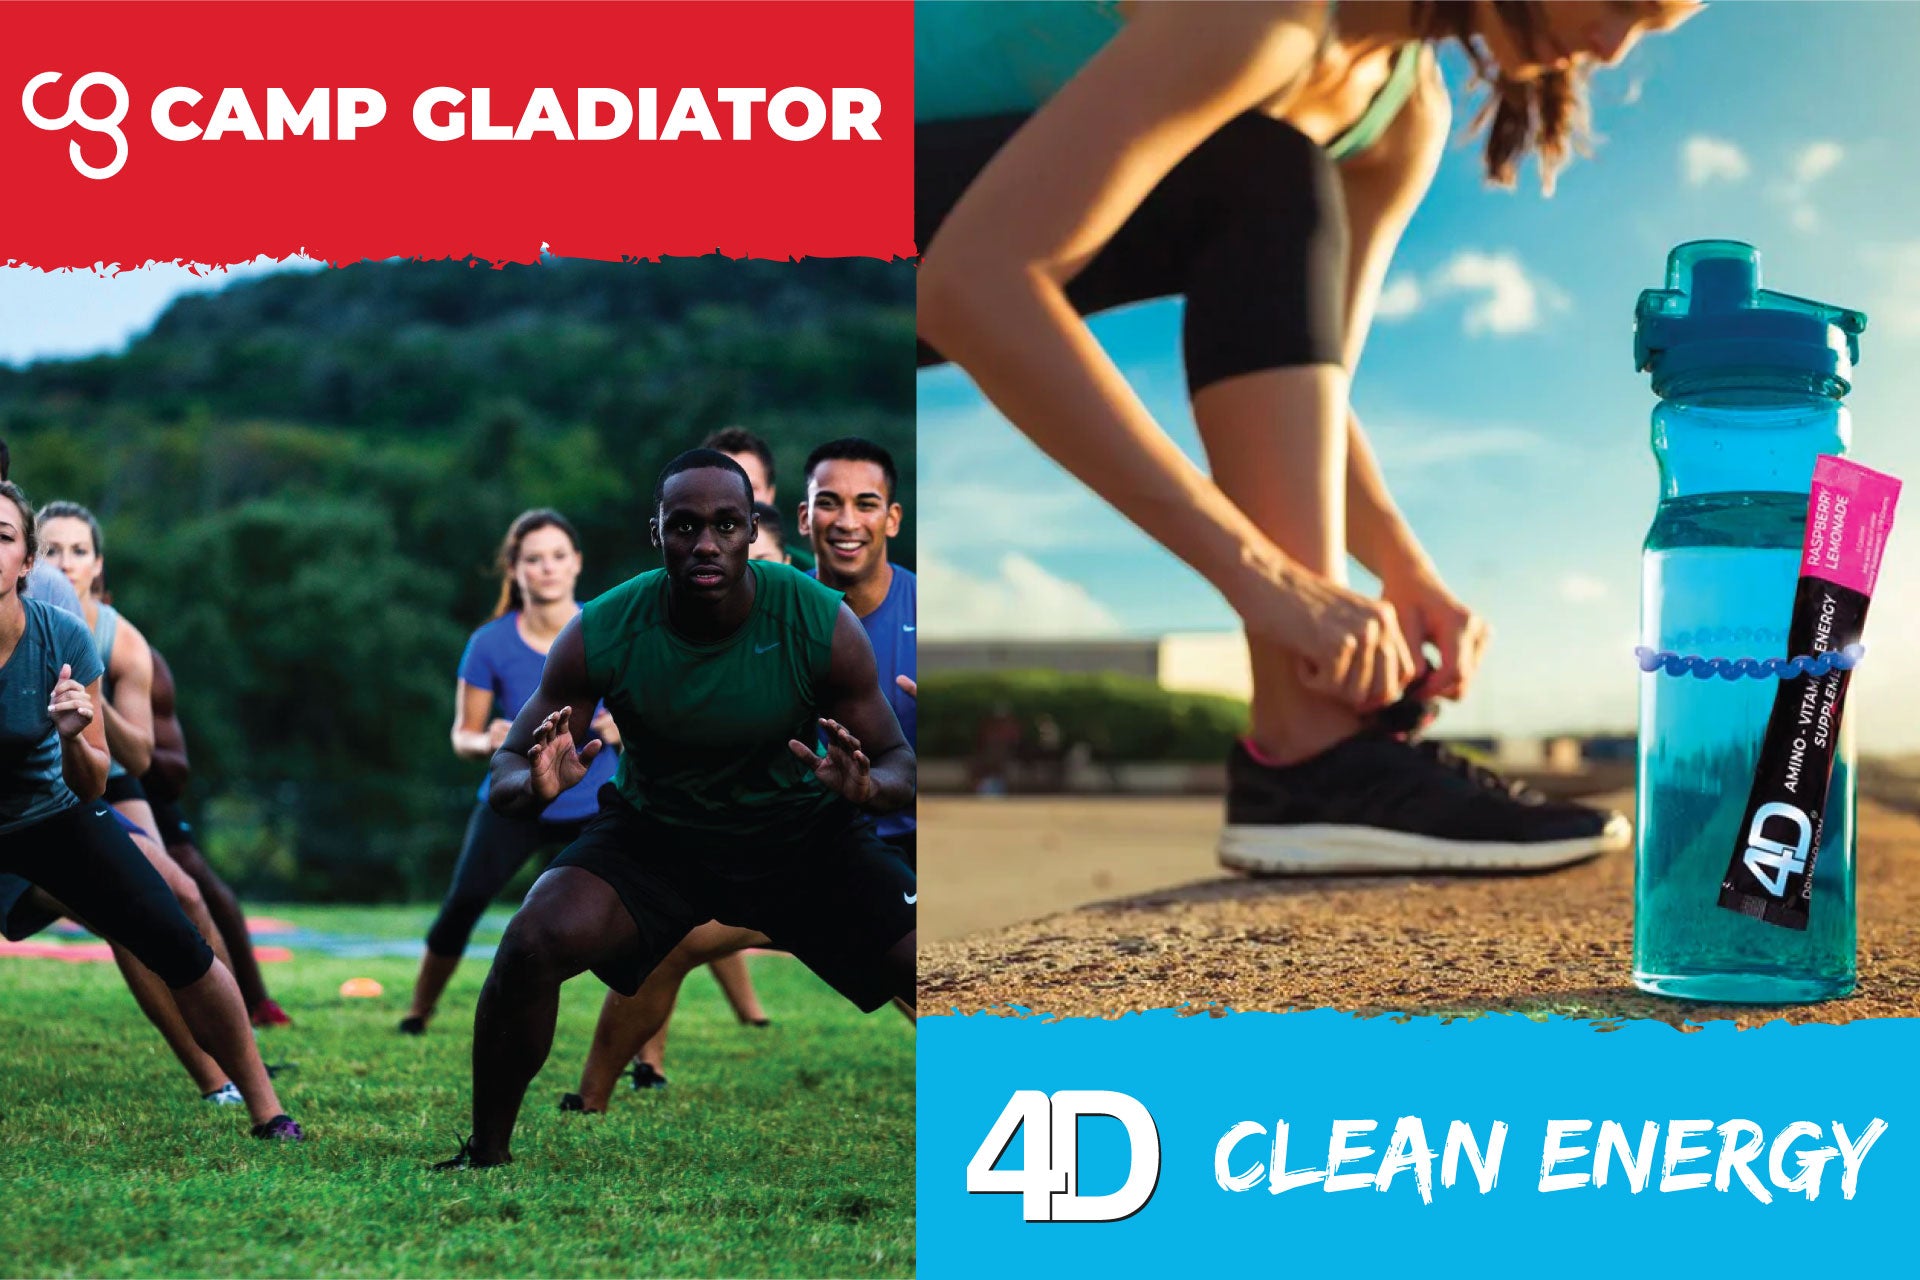 Camp Gladiator 4D Partnership